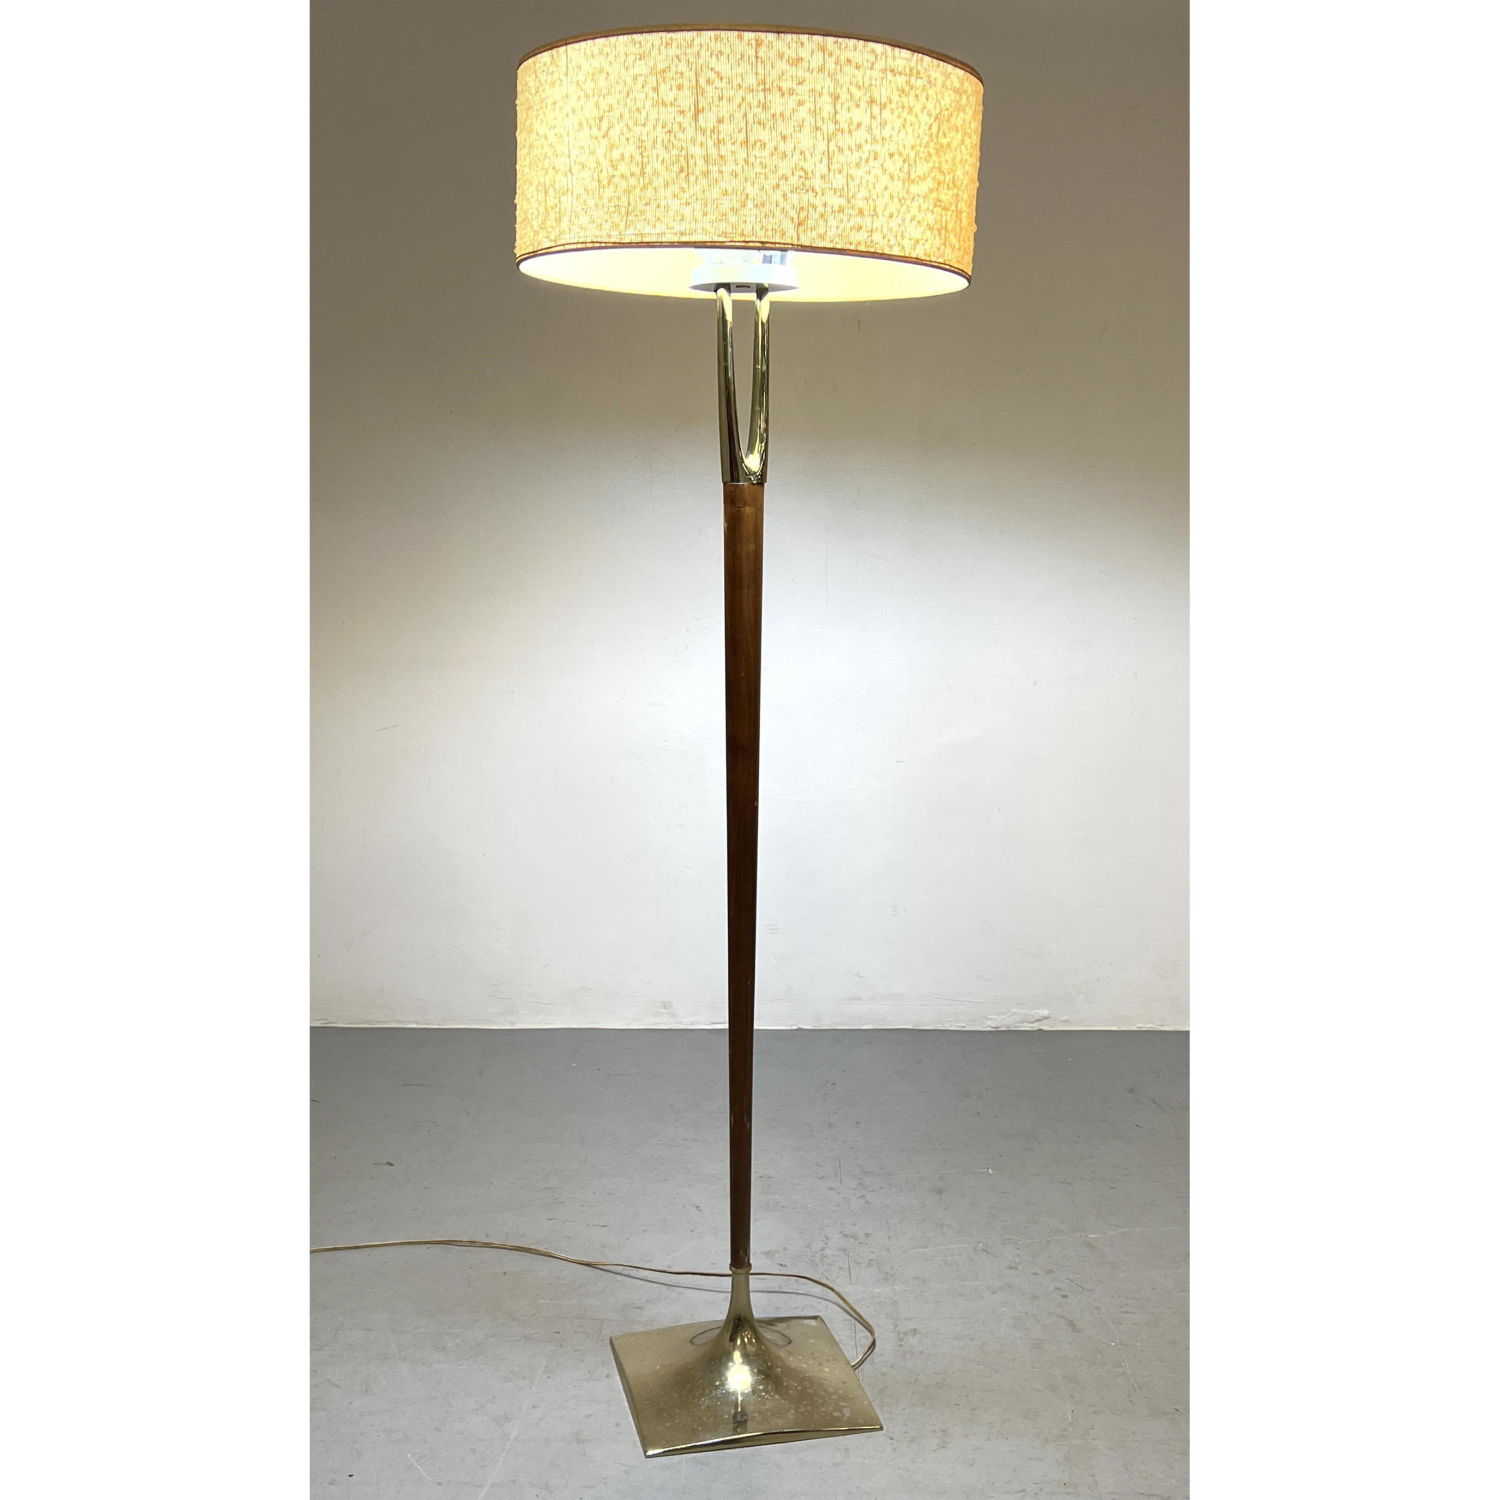 LAUREL Walnut and Brass Floor Lamp.